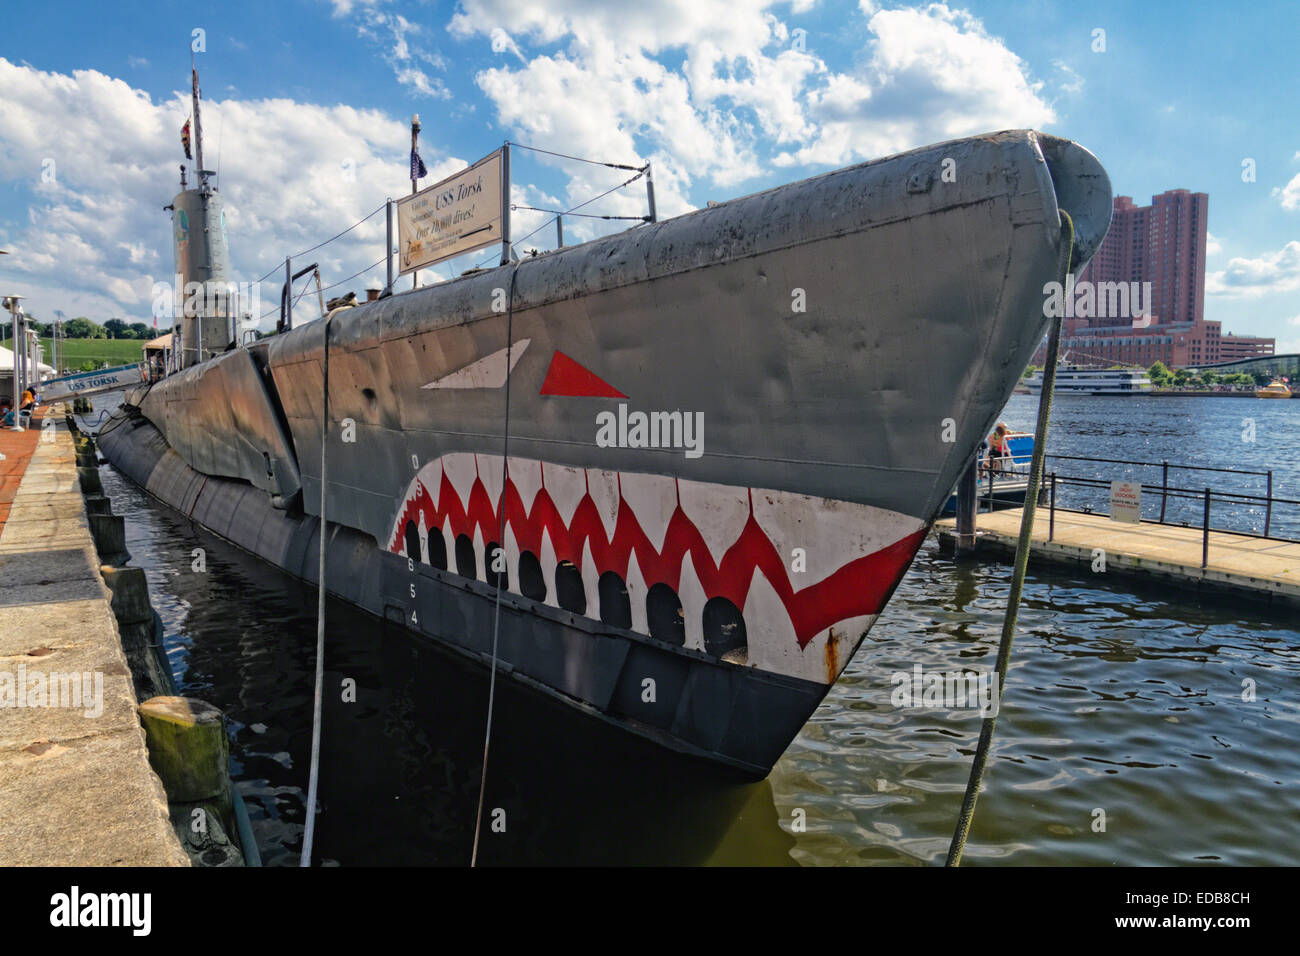 Basso Angolo di visione di un sommergibile a un molo, USS Torsk,sommergibile Memorial, il Porto Interno di Baltimore, Maryland, Stati Uniti d'America Foto Stock